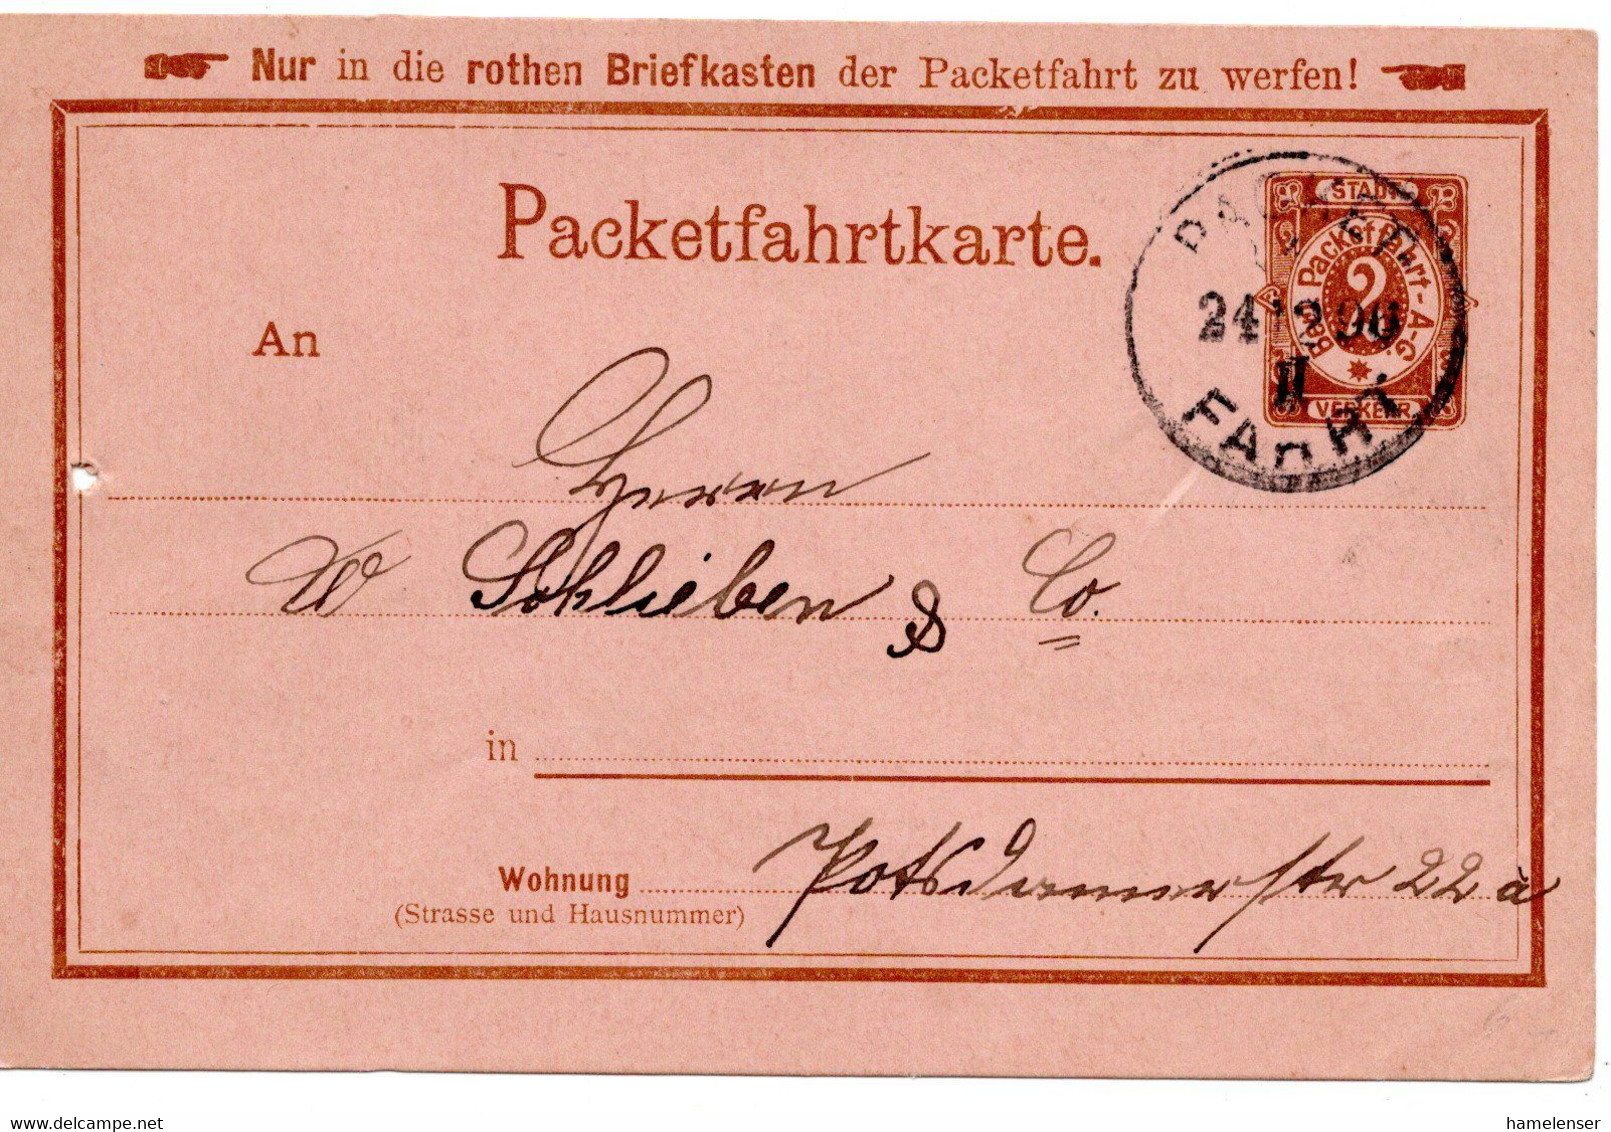 55430 - Deutsches Reich / Berliner Packetfahrt - 1896 - 2Pfg. GAKte. PACKET FAHRT - Posta Privata & Locale